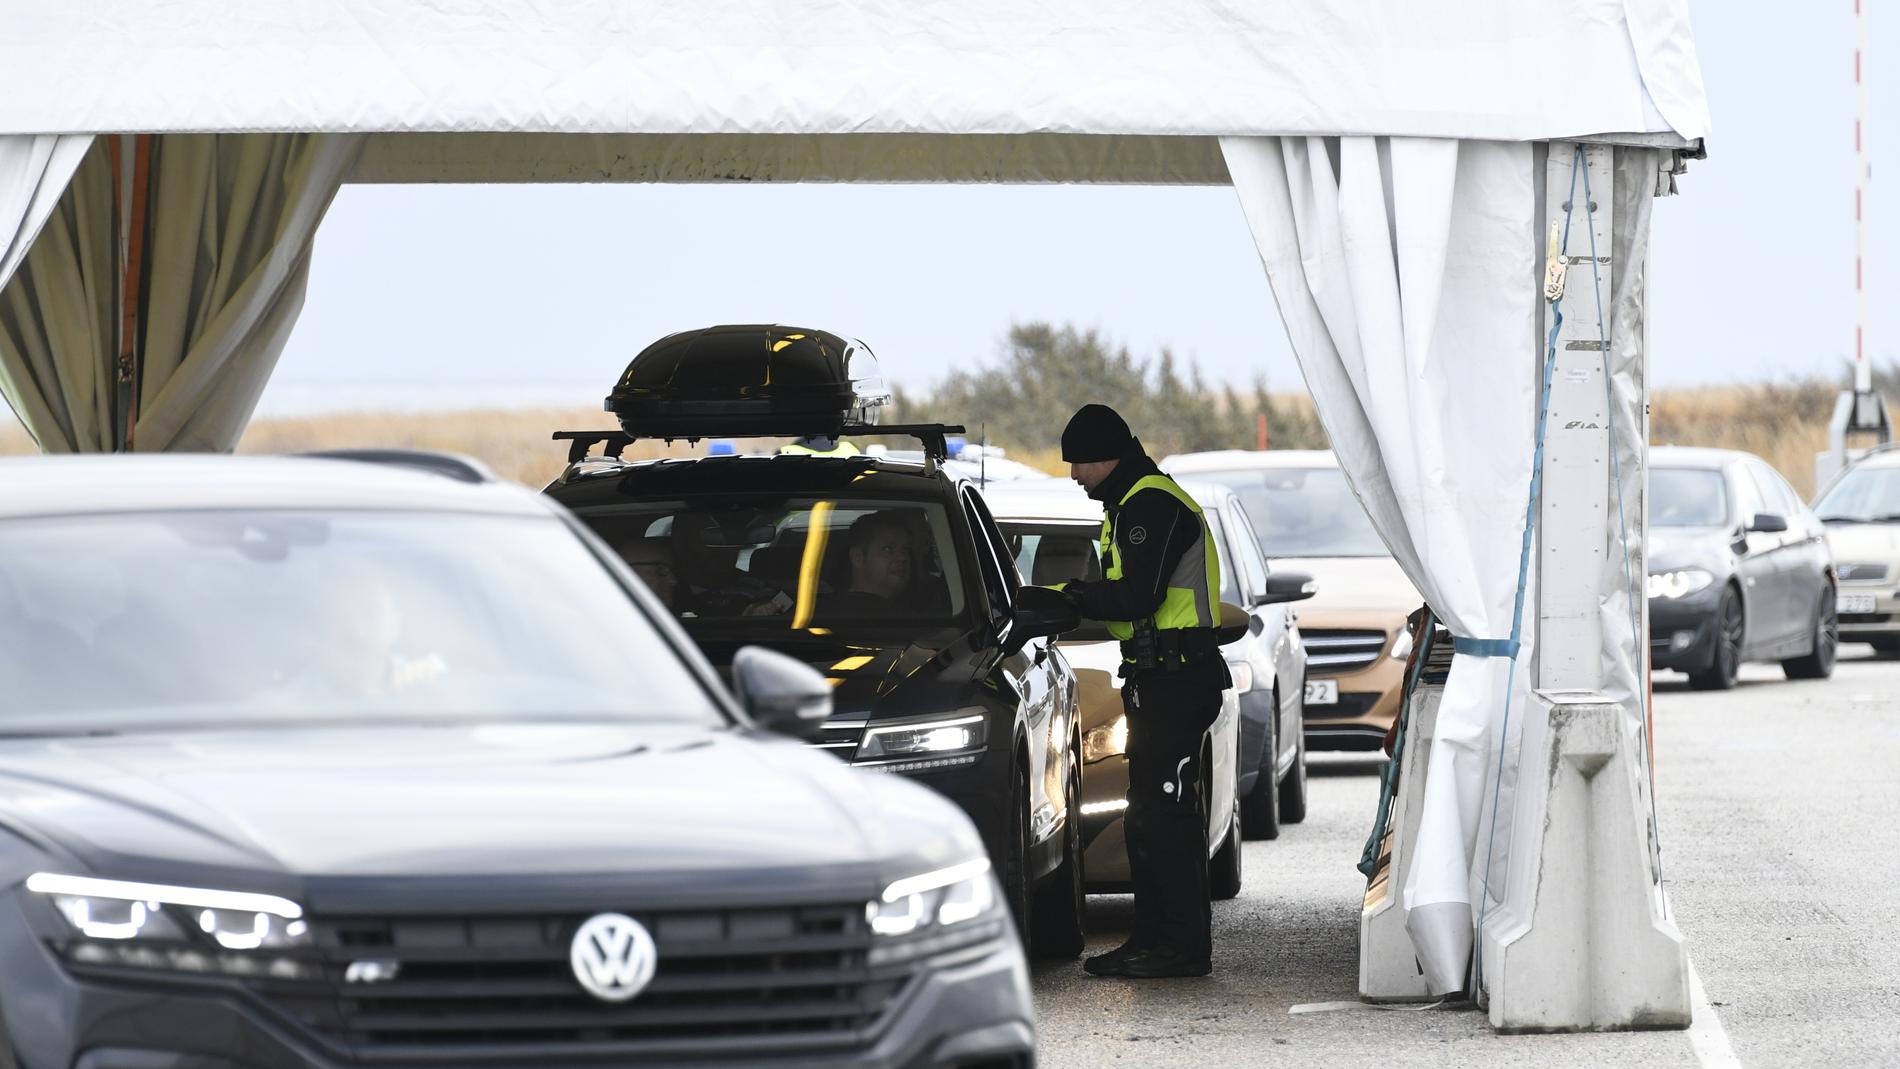 Dansk polis utför gränskontroll på bilar som kommer från Sverige.